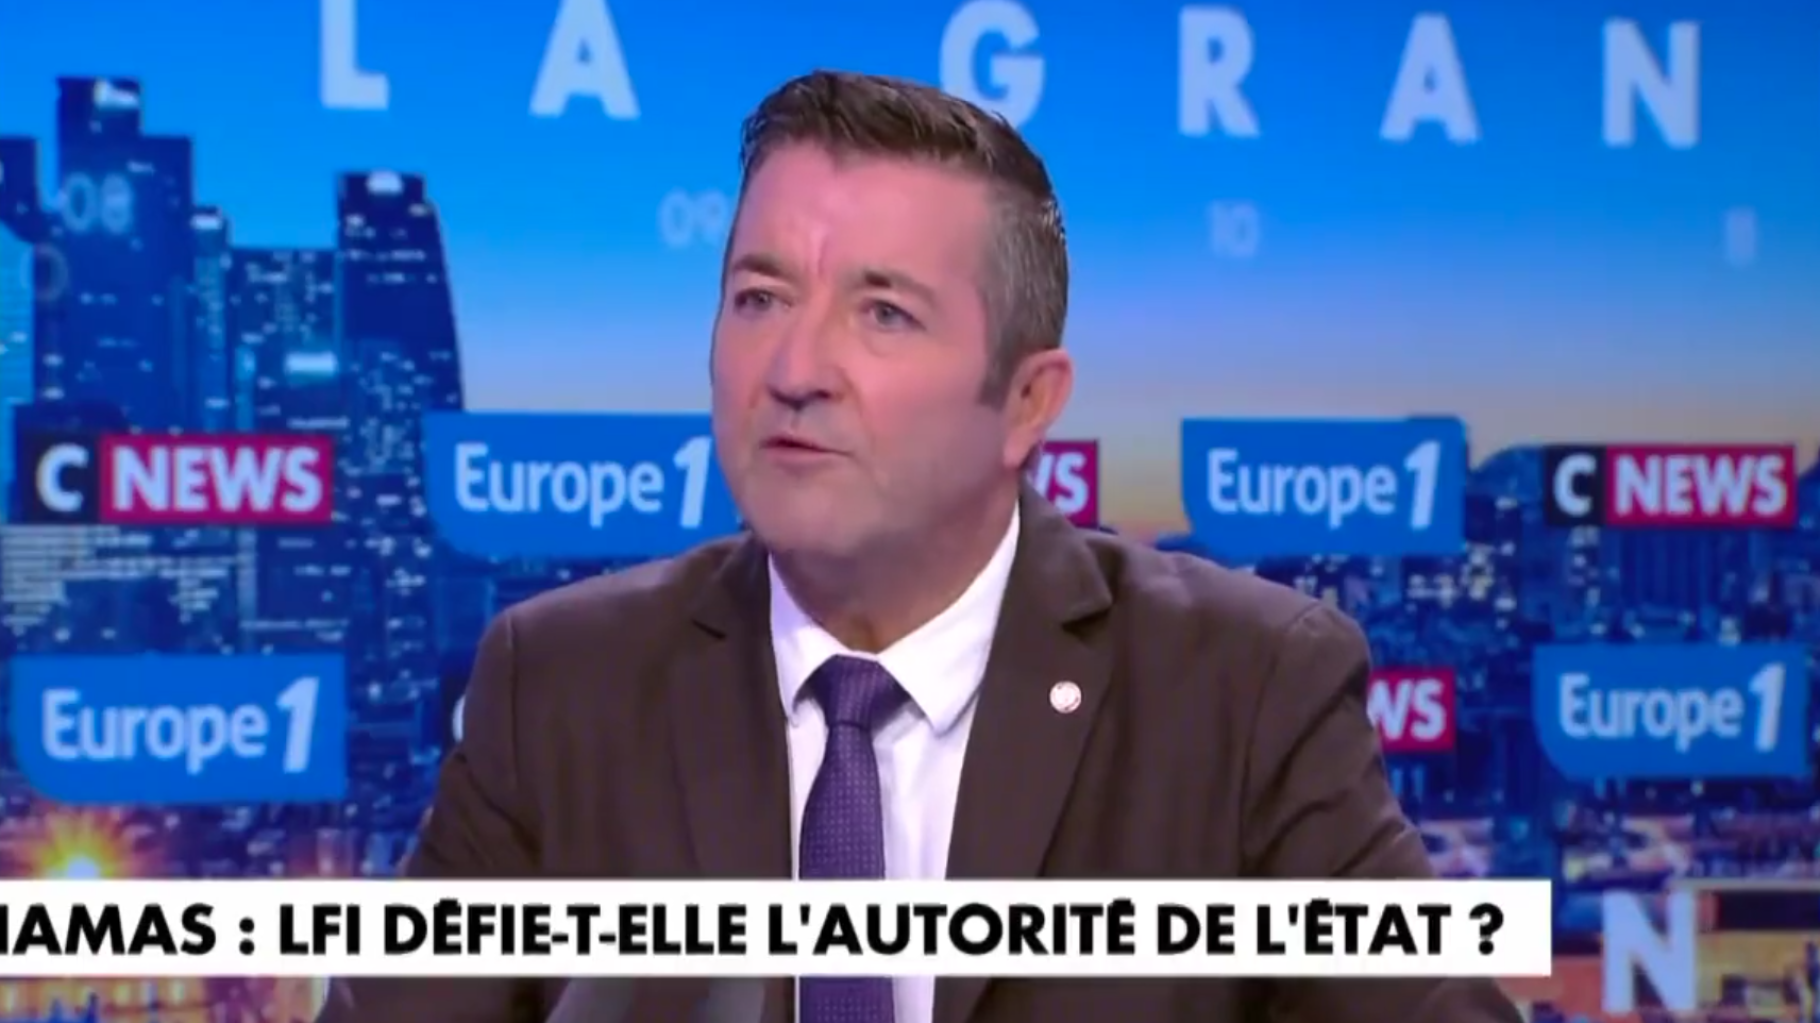   Mélenchon devrait être « fiché S », estime Karl Olive, un député Renaissance proche de Macron  